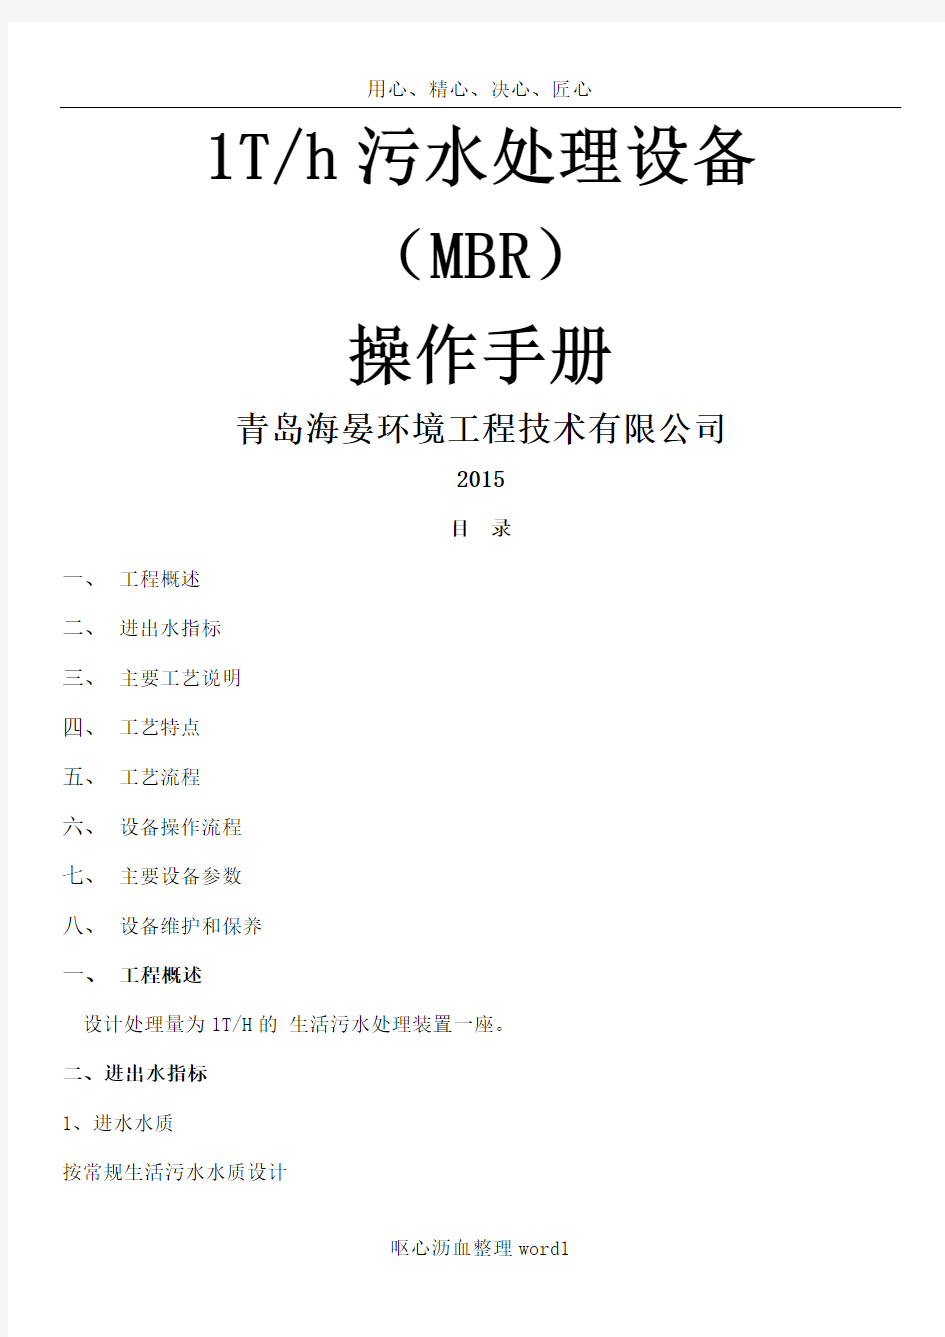 MBR一体化设备操作手册